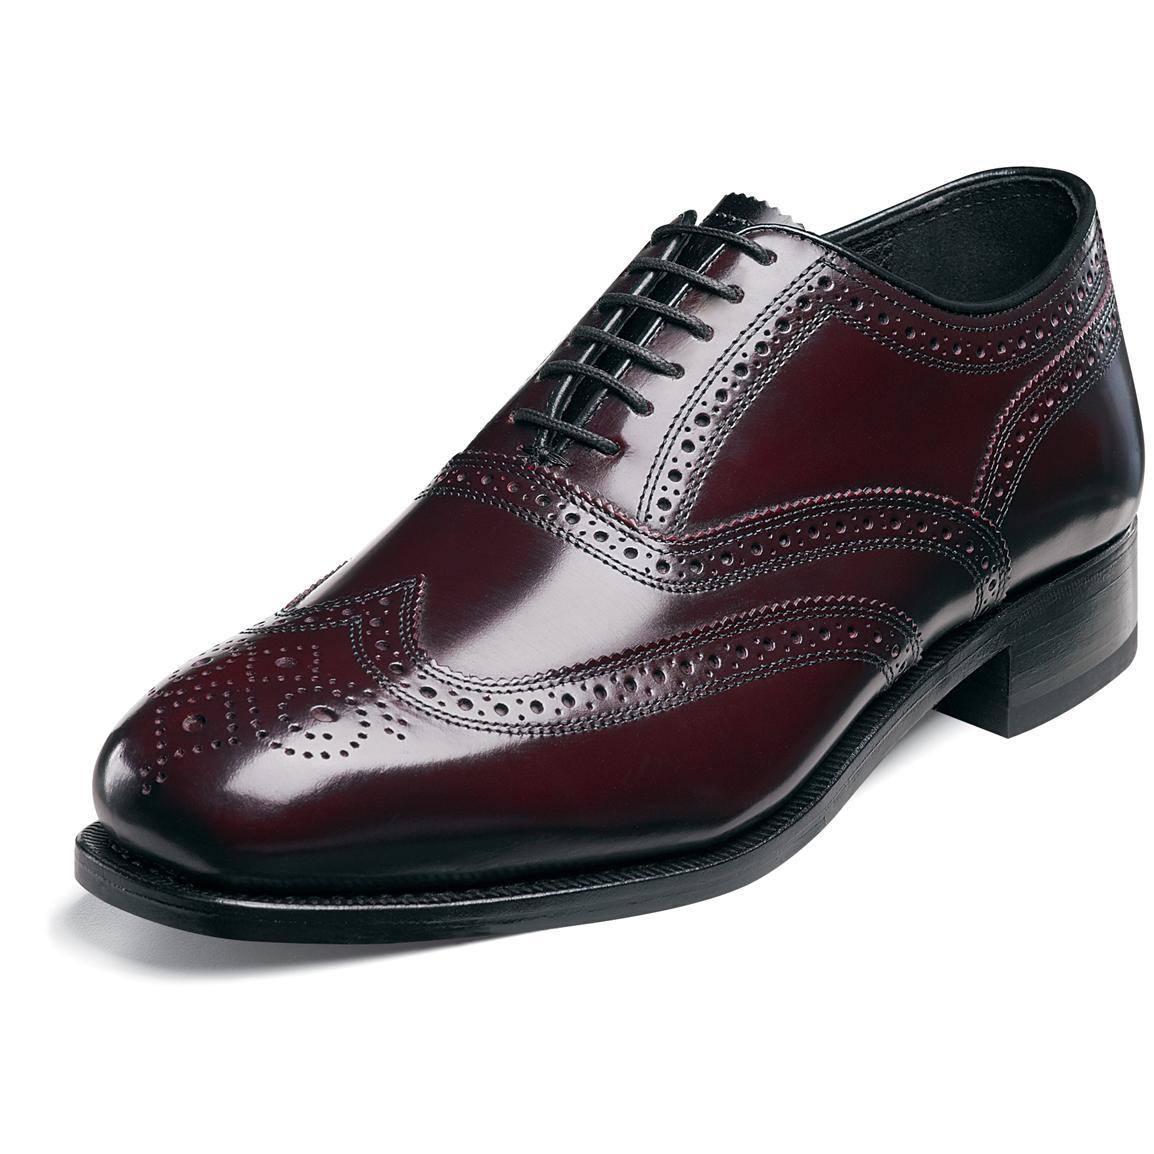 Men's Florsheim® Wing Tip Lexington Shoes - 185724, Dress Shoes at ...